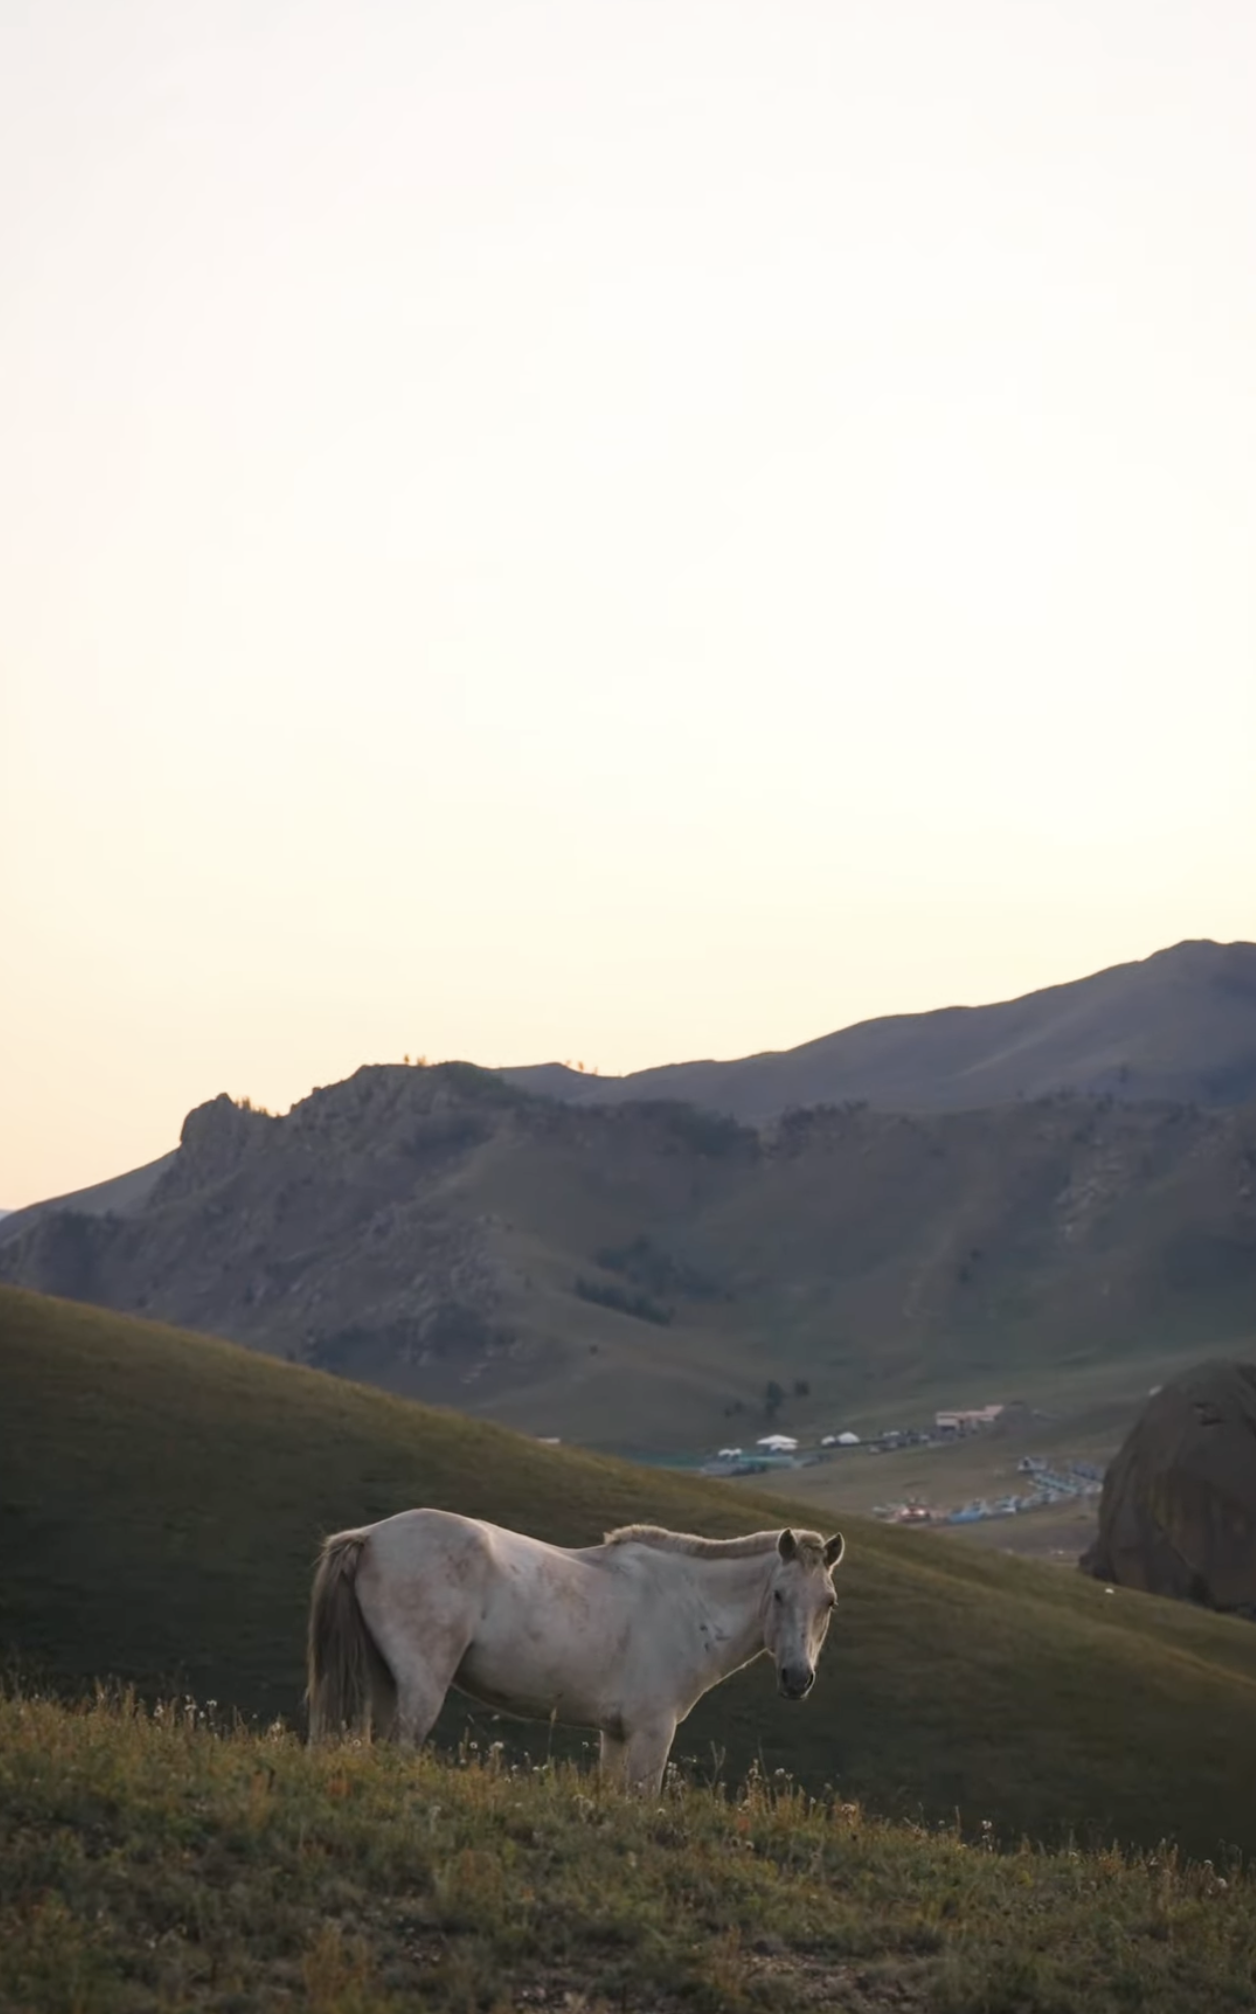 Horse running on mountain slope